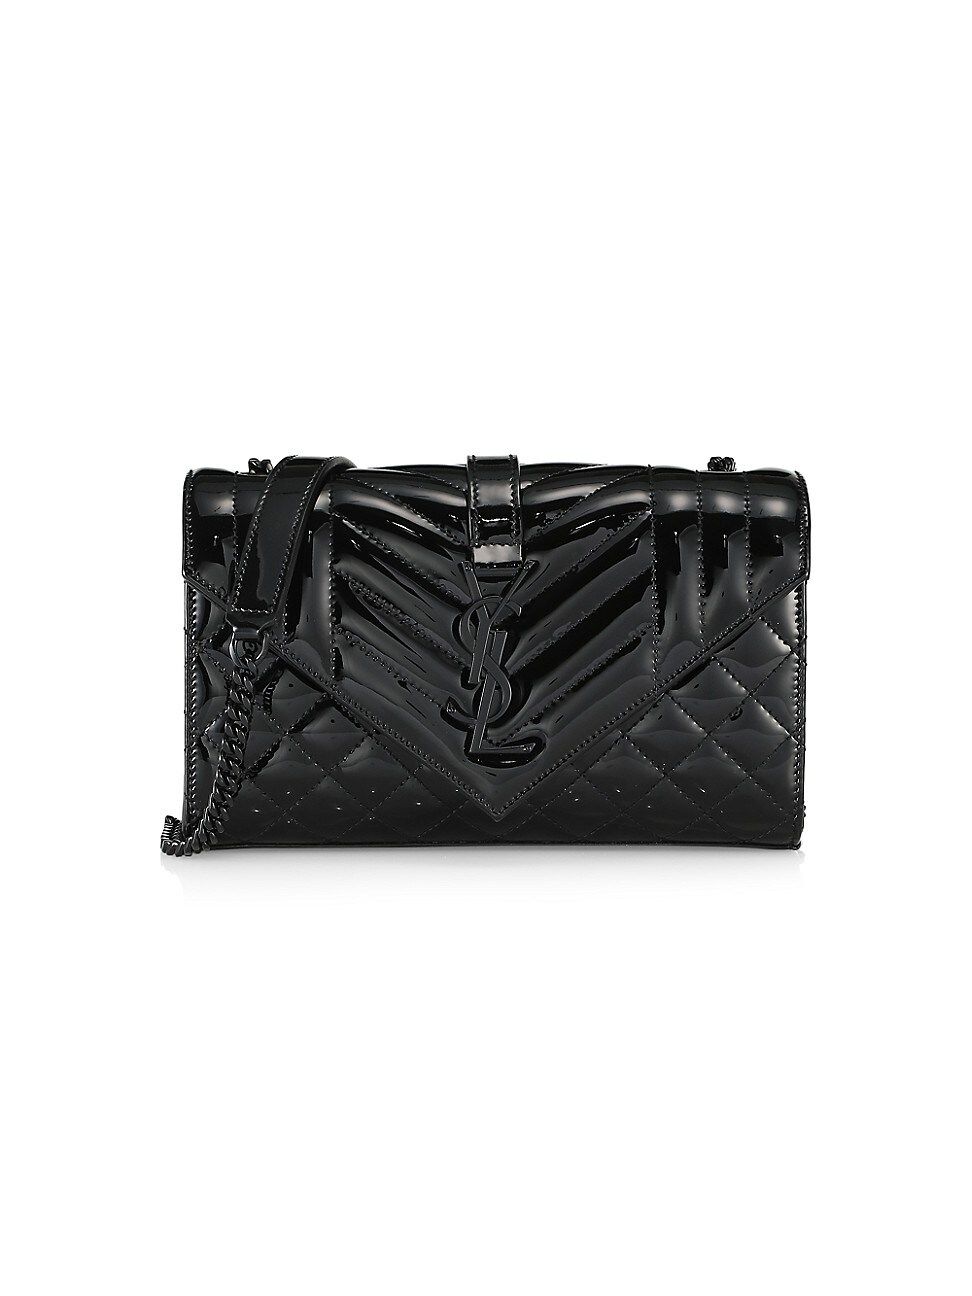 Saint Laurent Women's Envelope Monogram Matelassé Patent Leather Shoulder Bag - Black | Saks Fifth Avenue